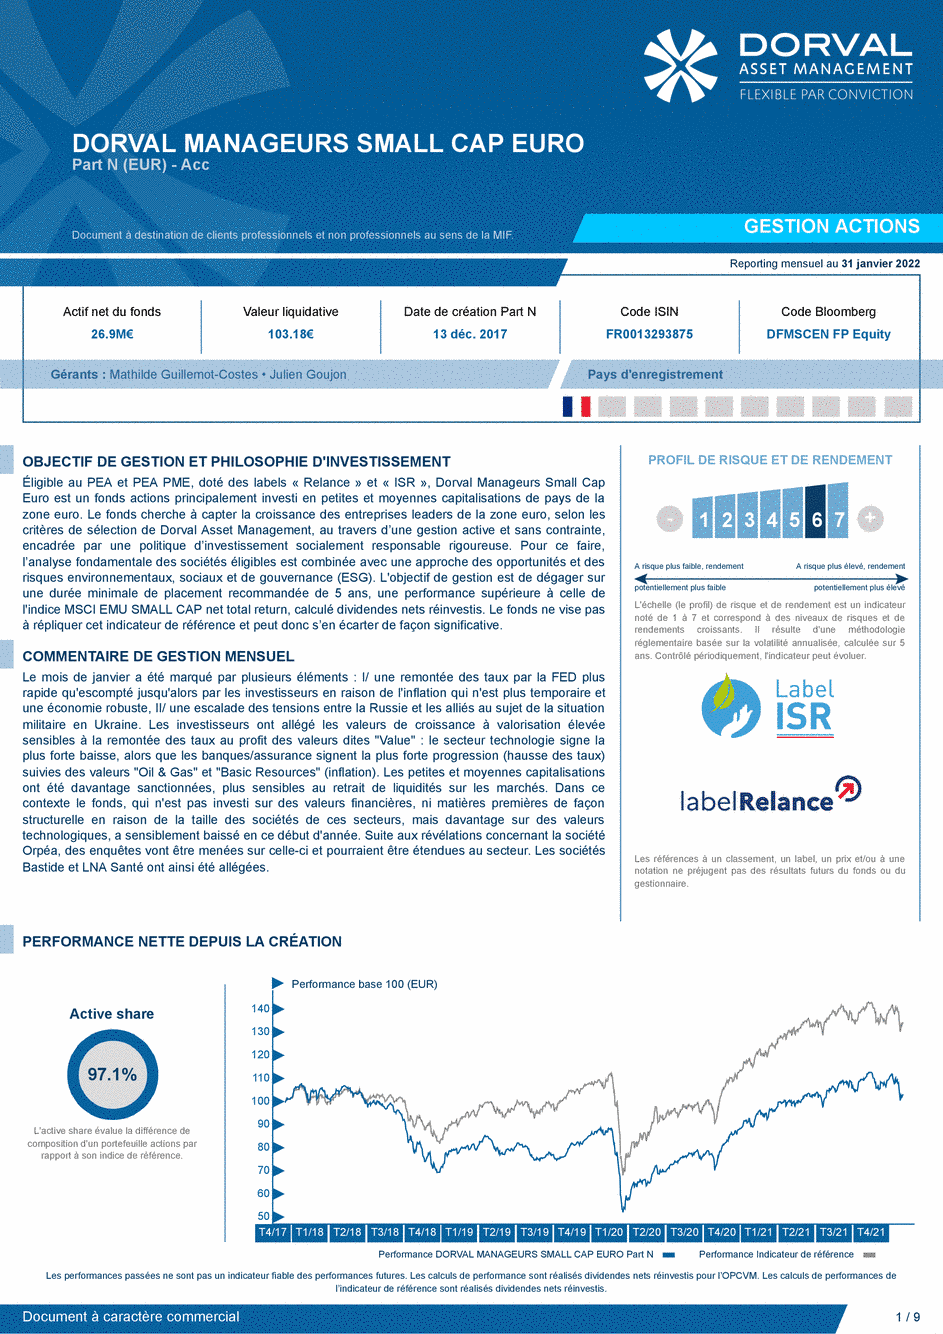 Reporting DORVAL MANAGEURS SMALL CAP EURO N - 31/01/2022 - Français